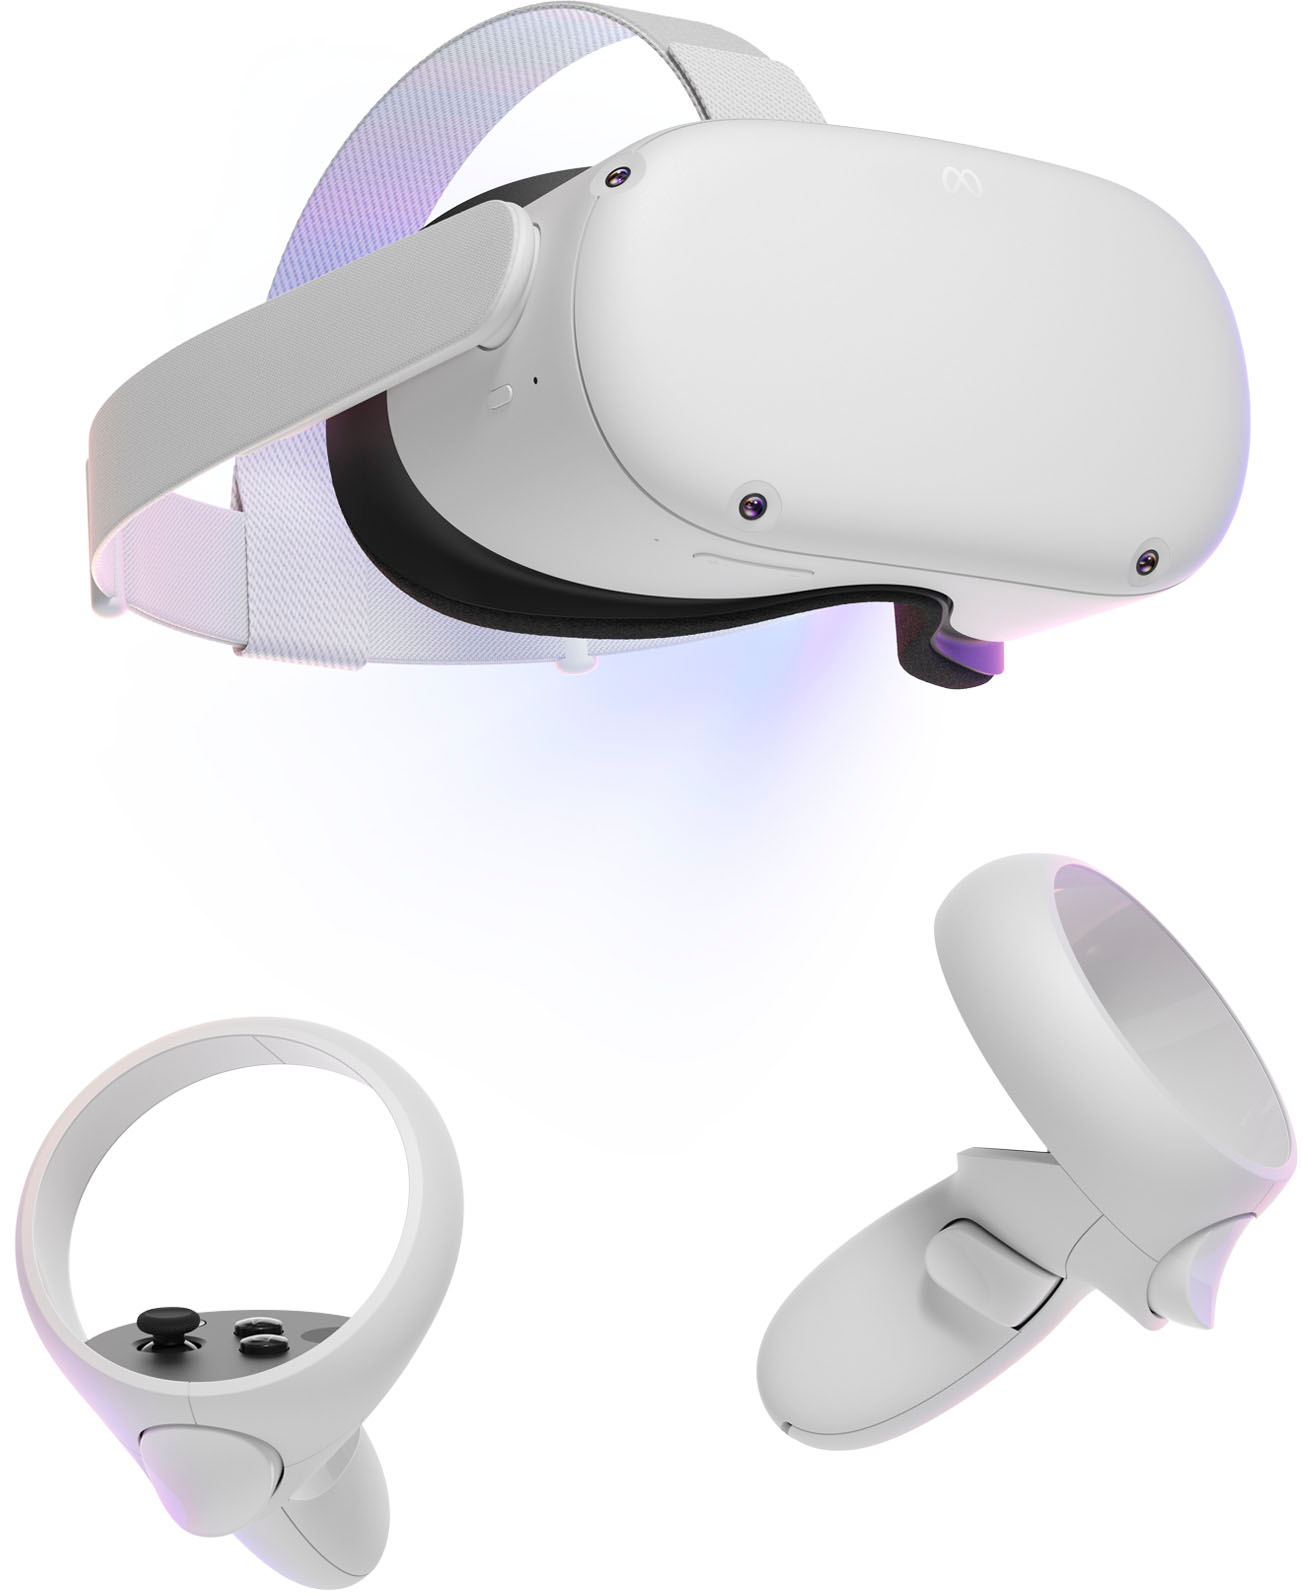 ødemark Tegn et billede at tiltrække Meta Quest 2 Advanced All-In-One Virtual Reality Headset 128GB 899-00182-02  - Best Buy